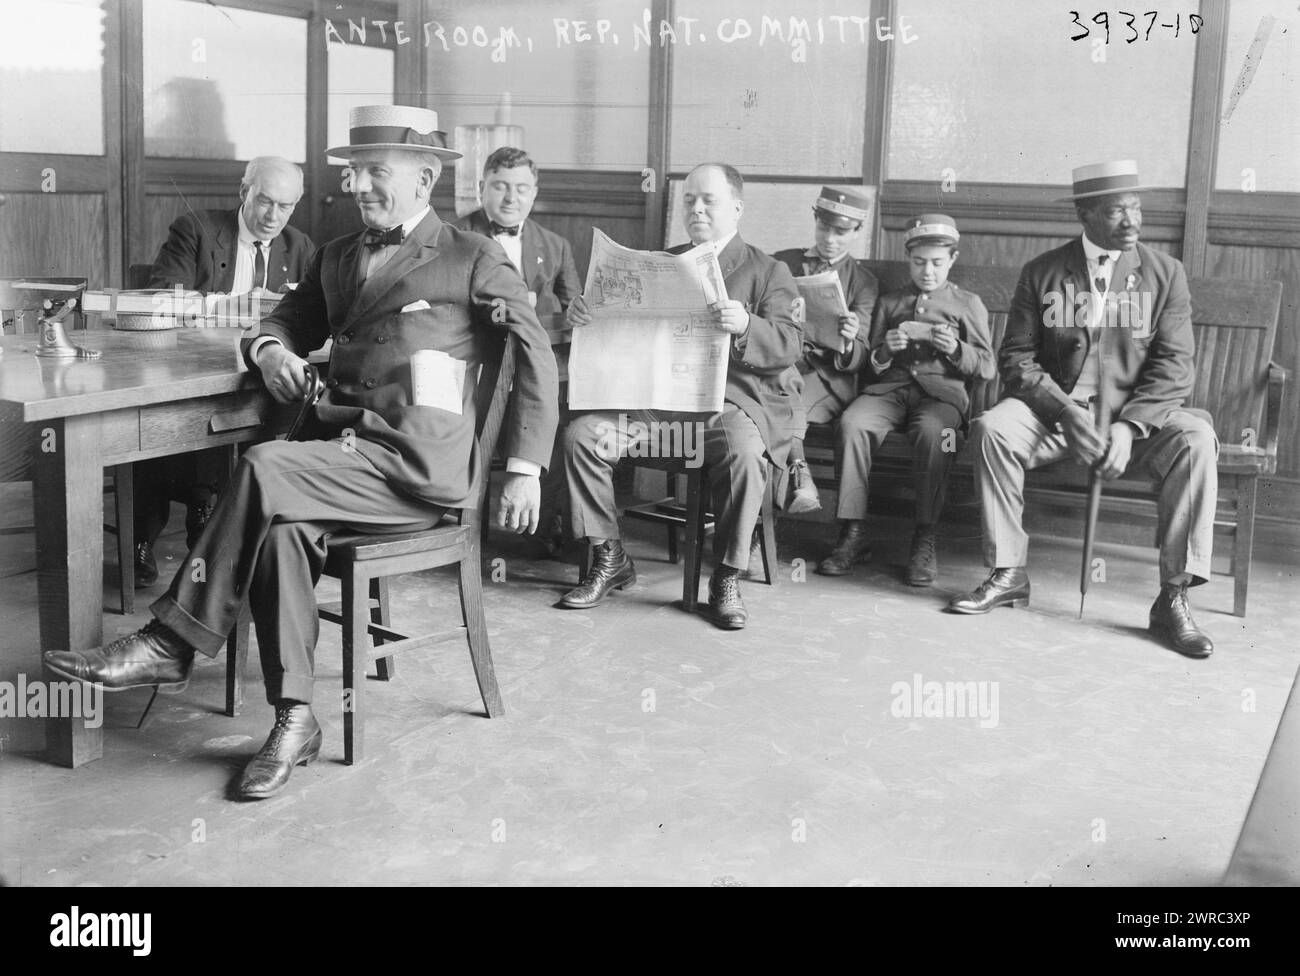 Vorraum, Rep. Nat. Komitee, Foto zeigt Männer, einschließlich eines afroamerikanischen Mannes, und Jungen, die in einem Vorraum des Republikanischen Nationalkomitees warten. 1915 und ca. 1920, Glasnegative, 1 negativ: Glas Stockfoto